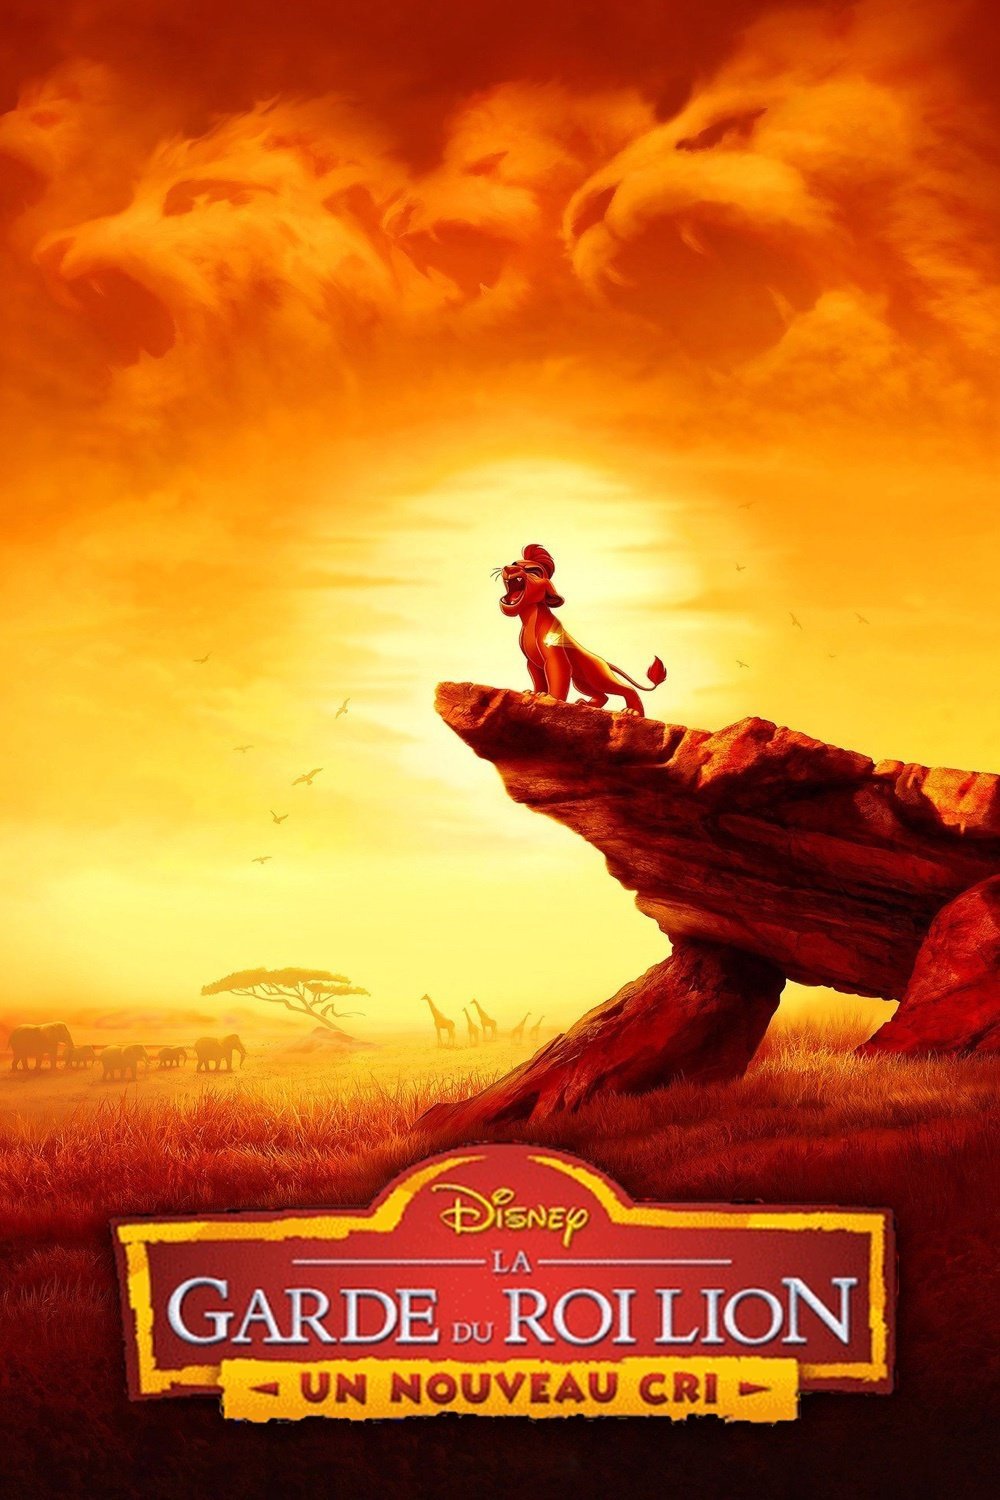 La Maison de Mickey : La Chasse aux Œufs de Pâques - Téléfilm Disney